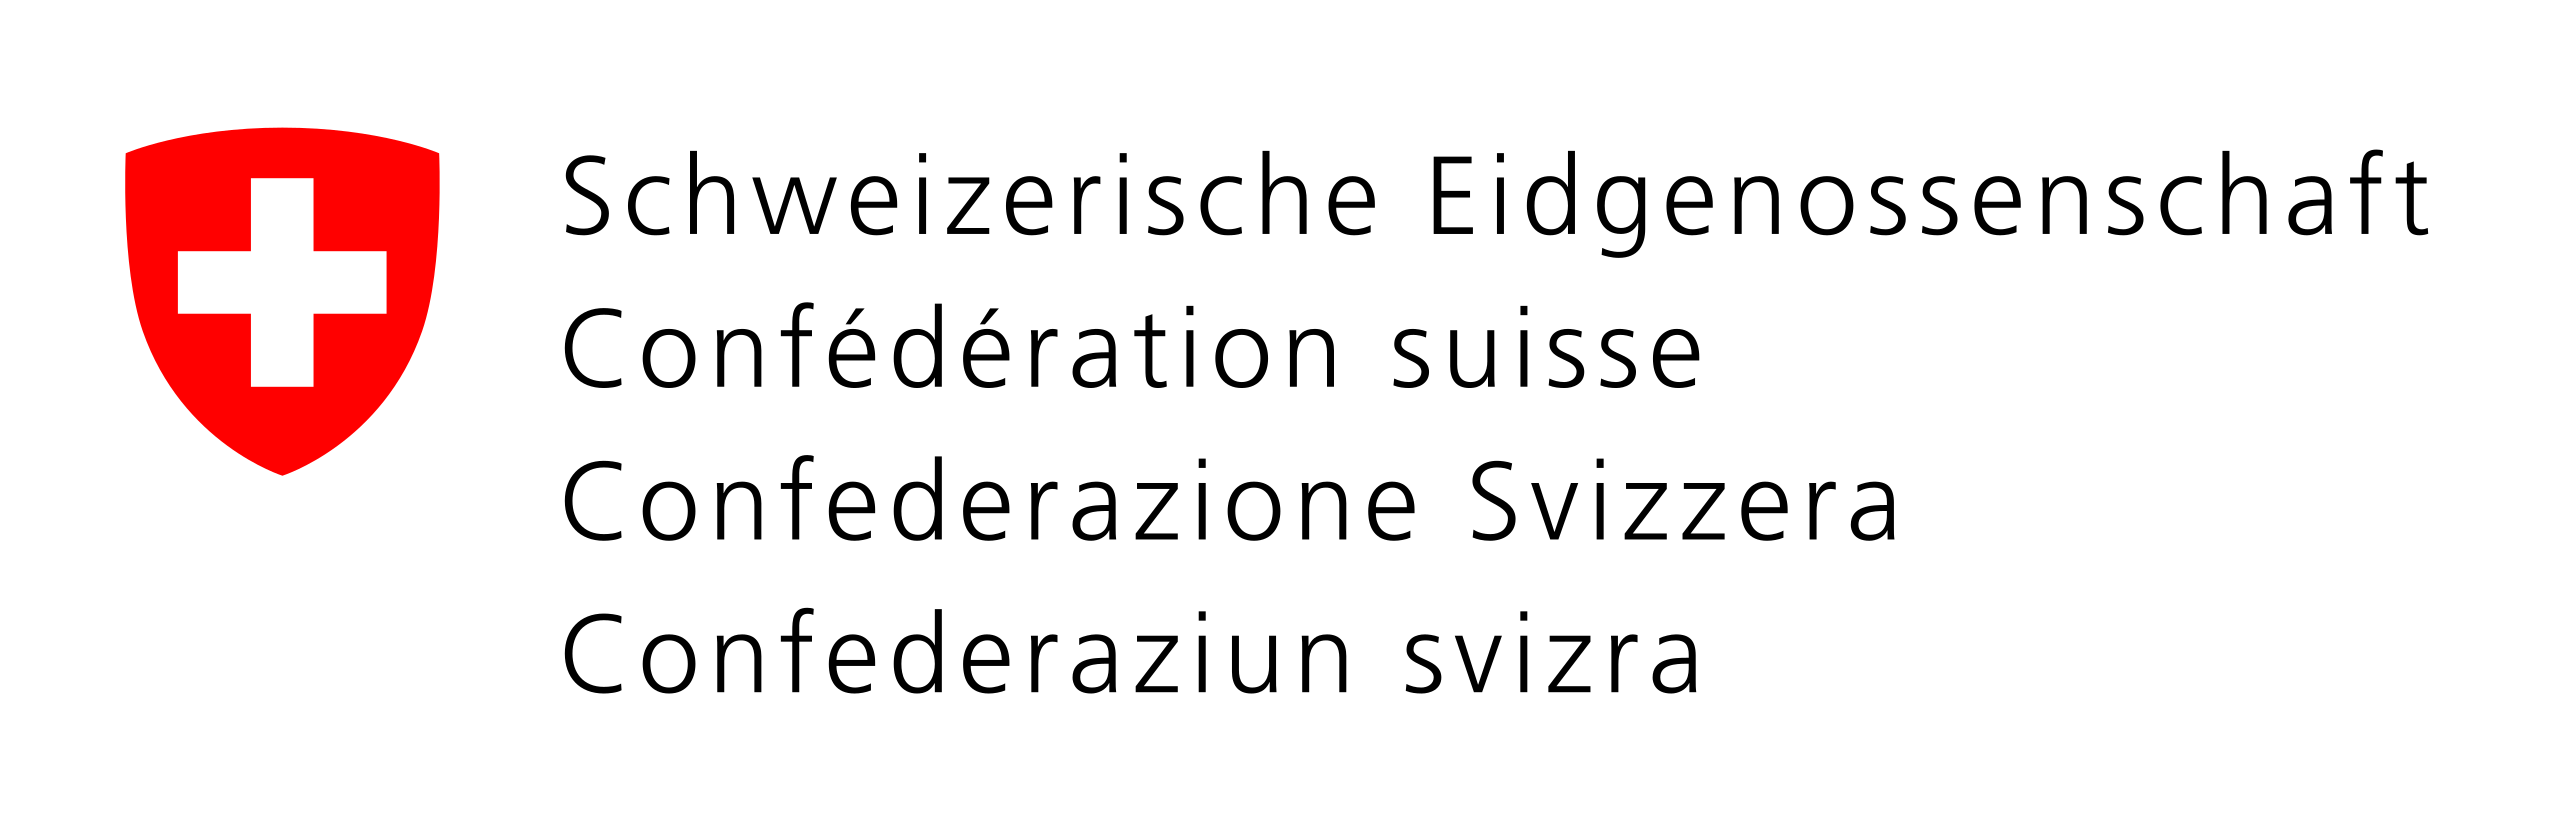 Fichier:Logo der Schweizerischen Eidgenossenschaft.svg ...